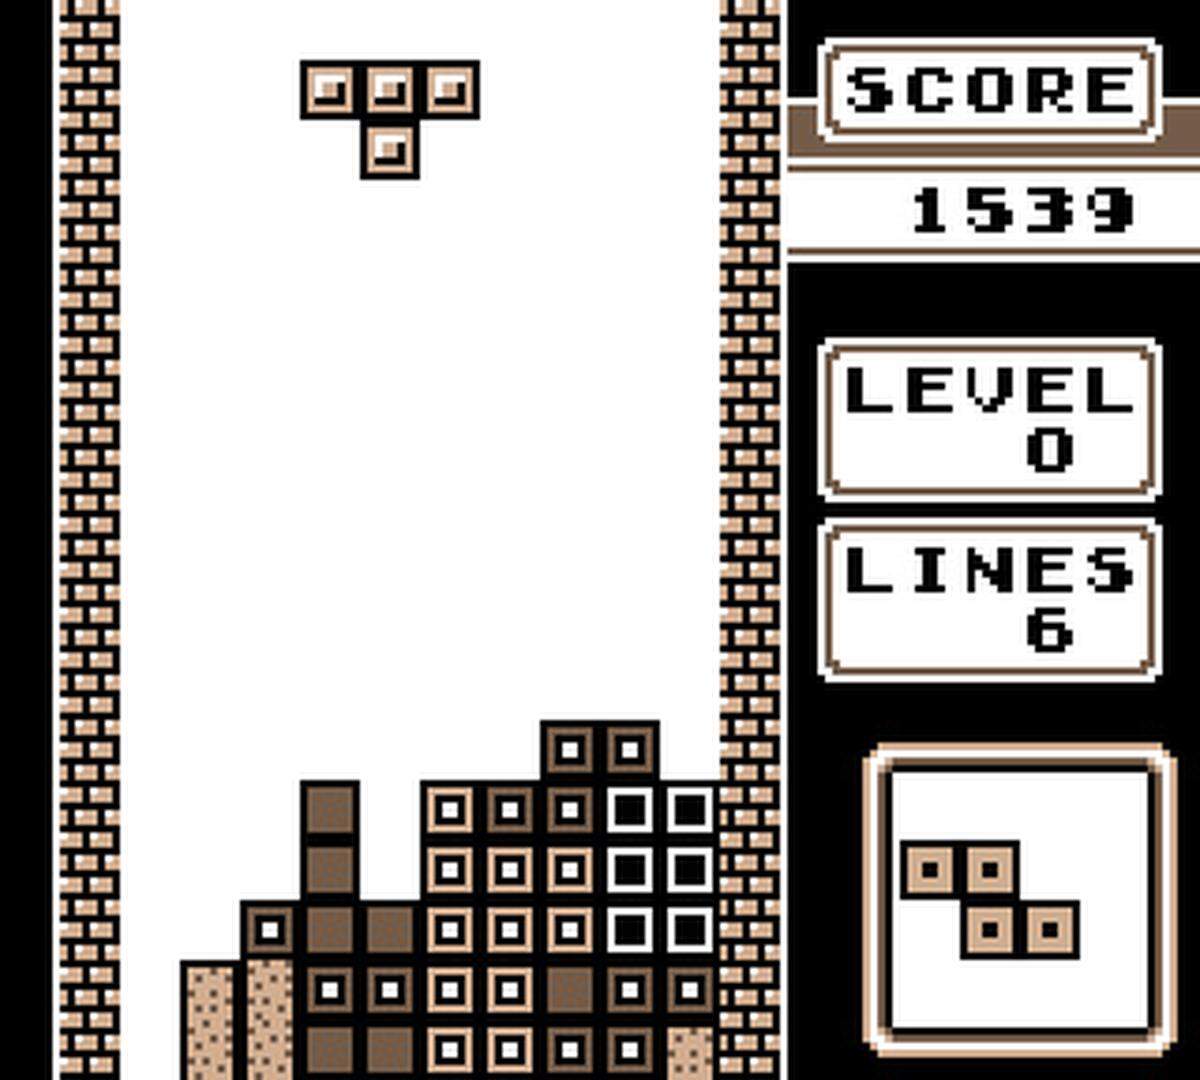 Einer der Gründe, warum sich die Konsole mehr als 100 Millionen Mal weltweit verkaufte, war dieses Spiel: Tetris. In der Dokumentation Tetris: From Russia with Love wird erzählt, unter welch abenteuerlichen Bedingungen Nintendo an die Rechte zu dem Spiel kam und dabei gleichzeitig Atari ausbootete.